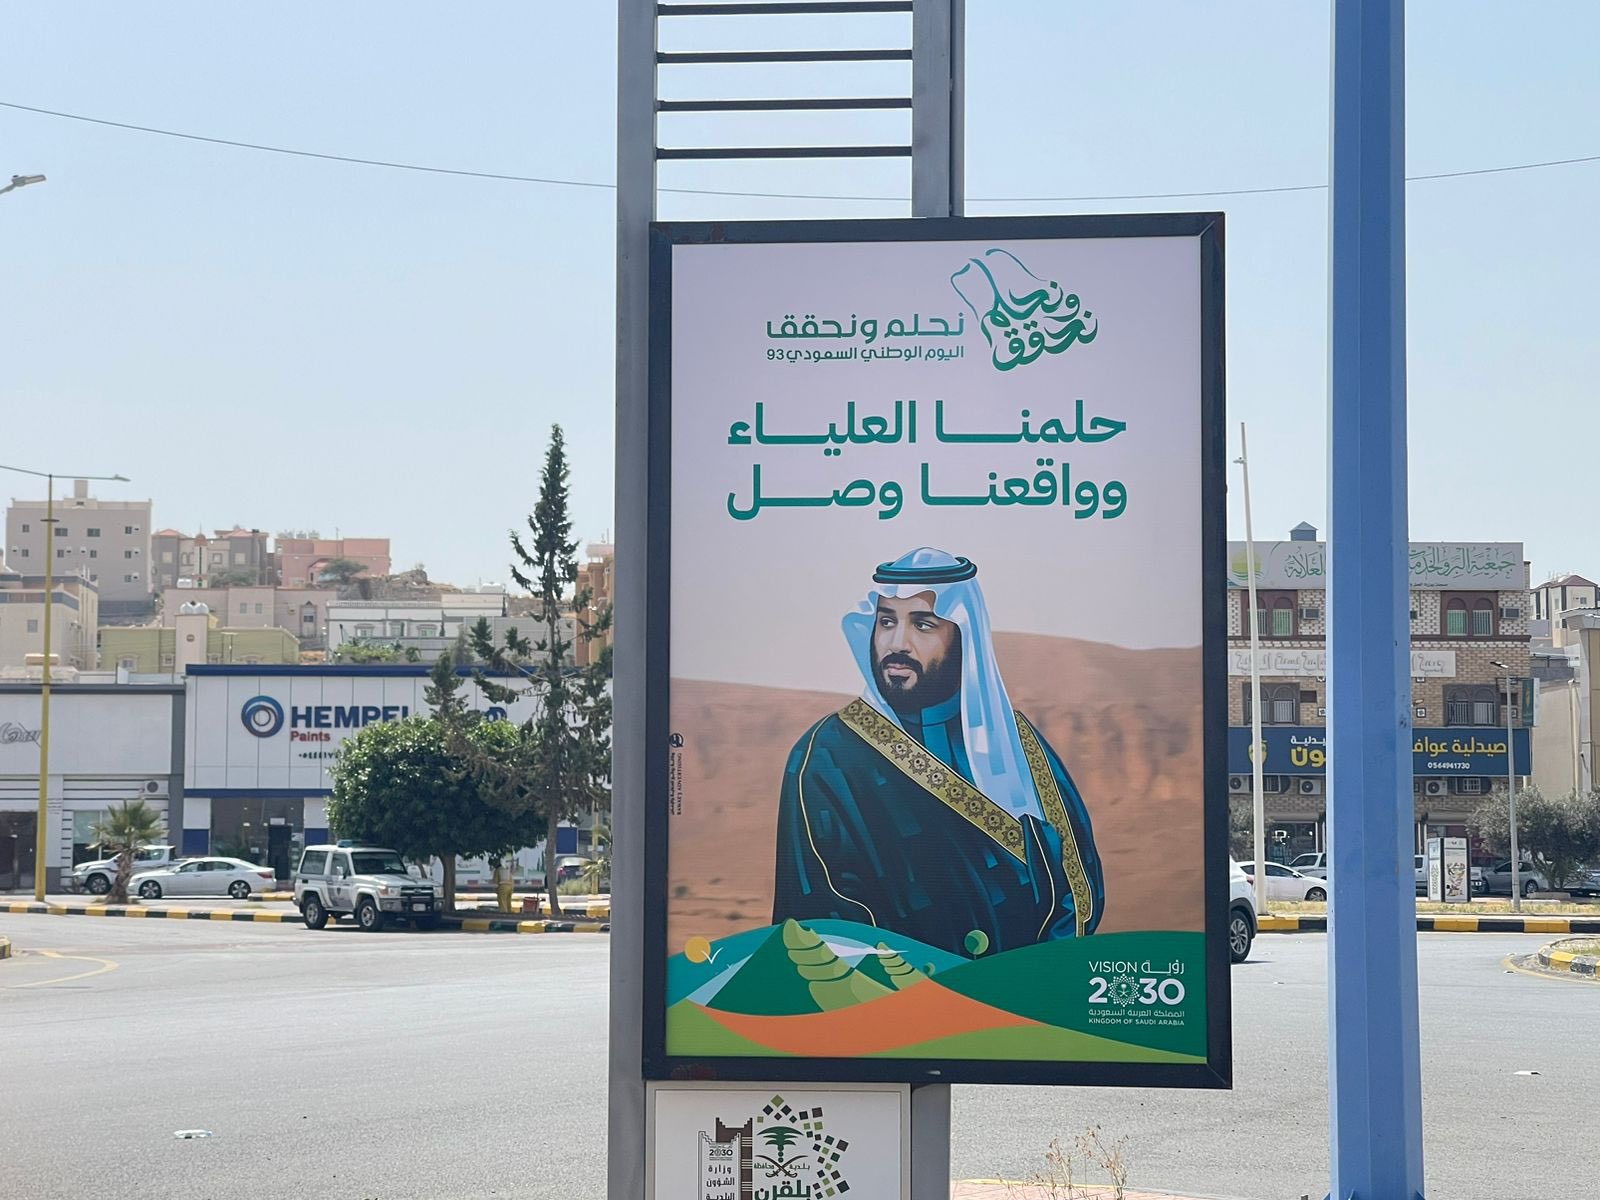 بلدية بلقرن تستعد للاحتفال باليوم الوطني السعودي الـ93